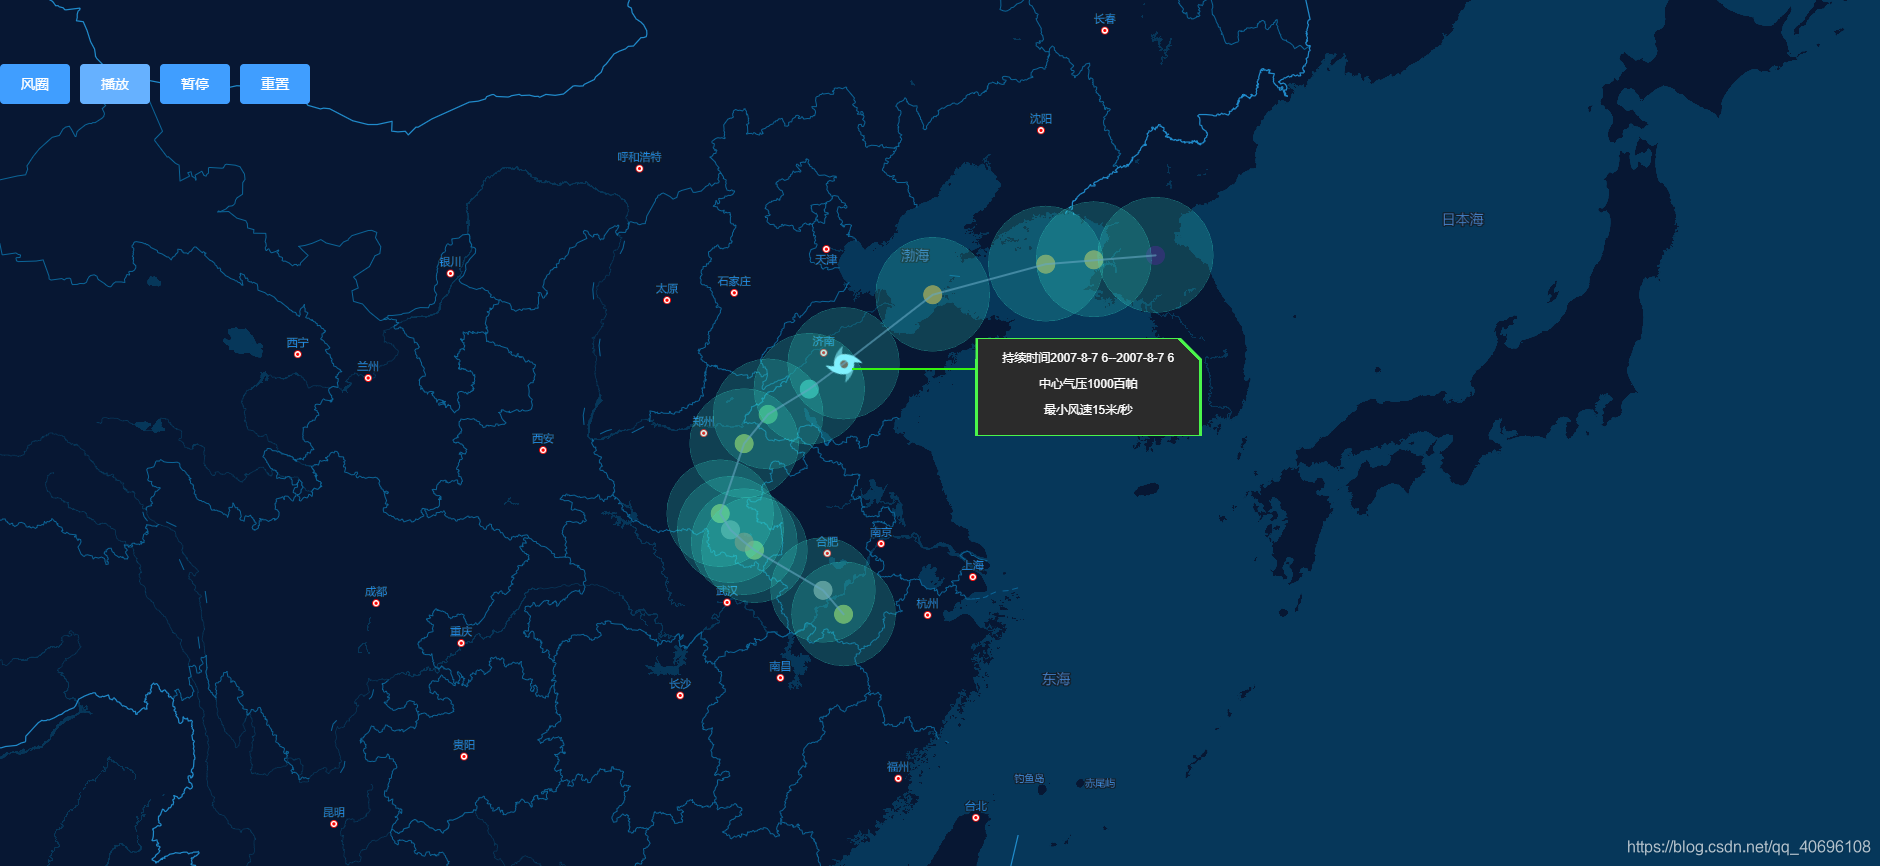 基于mineMap的地图台风灾害预警轨迹可视化方案